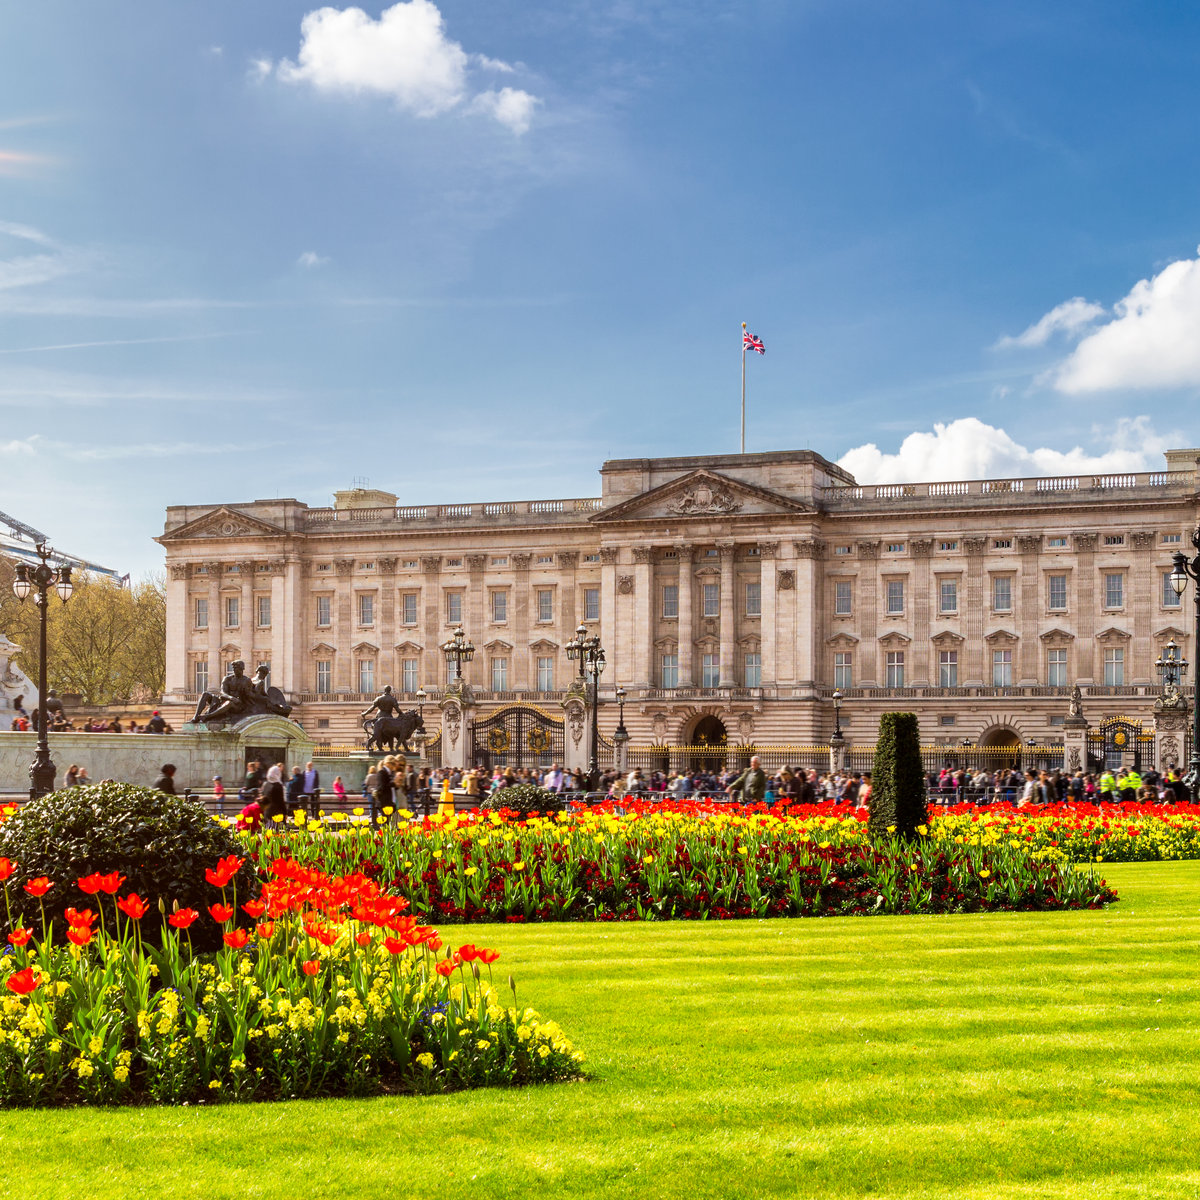 IMAGE: Buckingham Palace